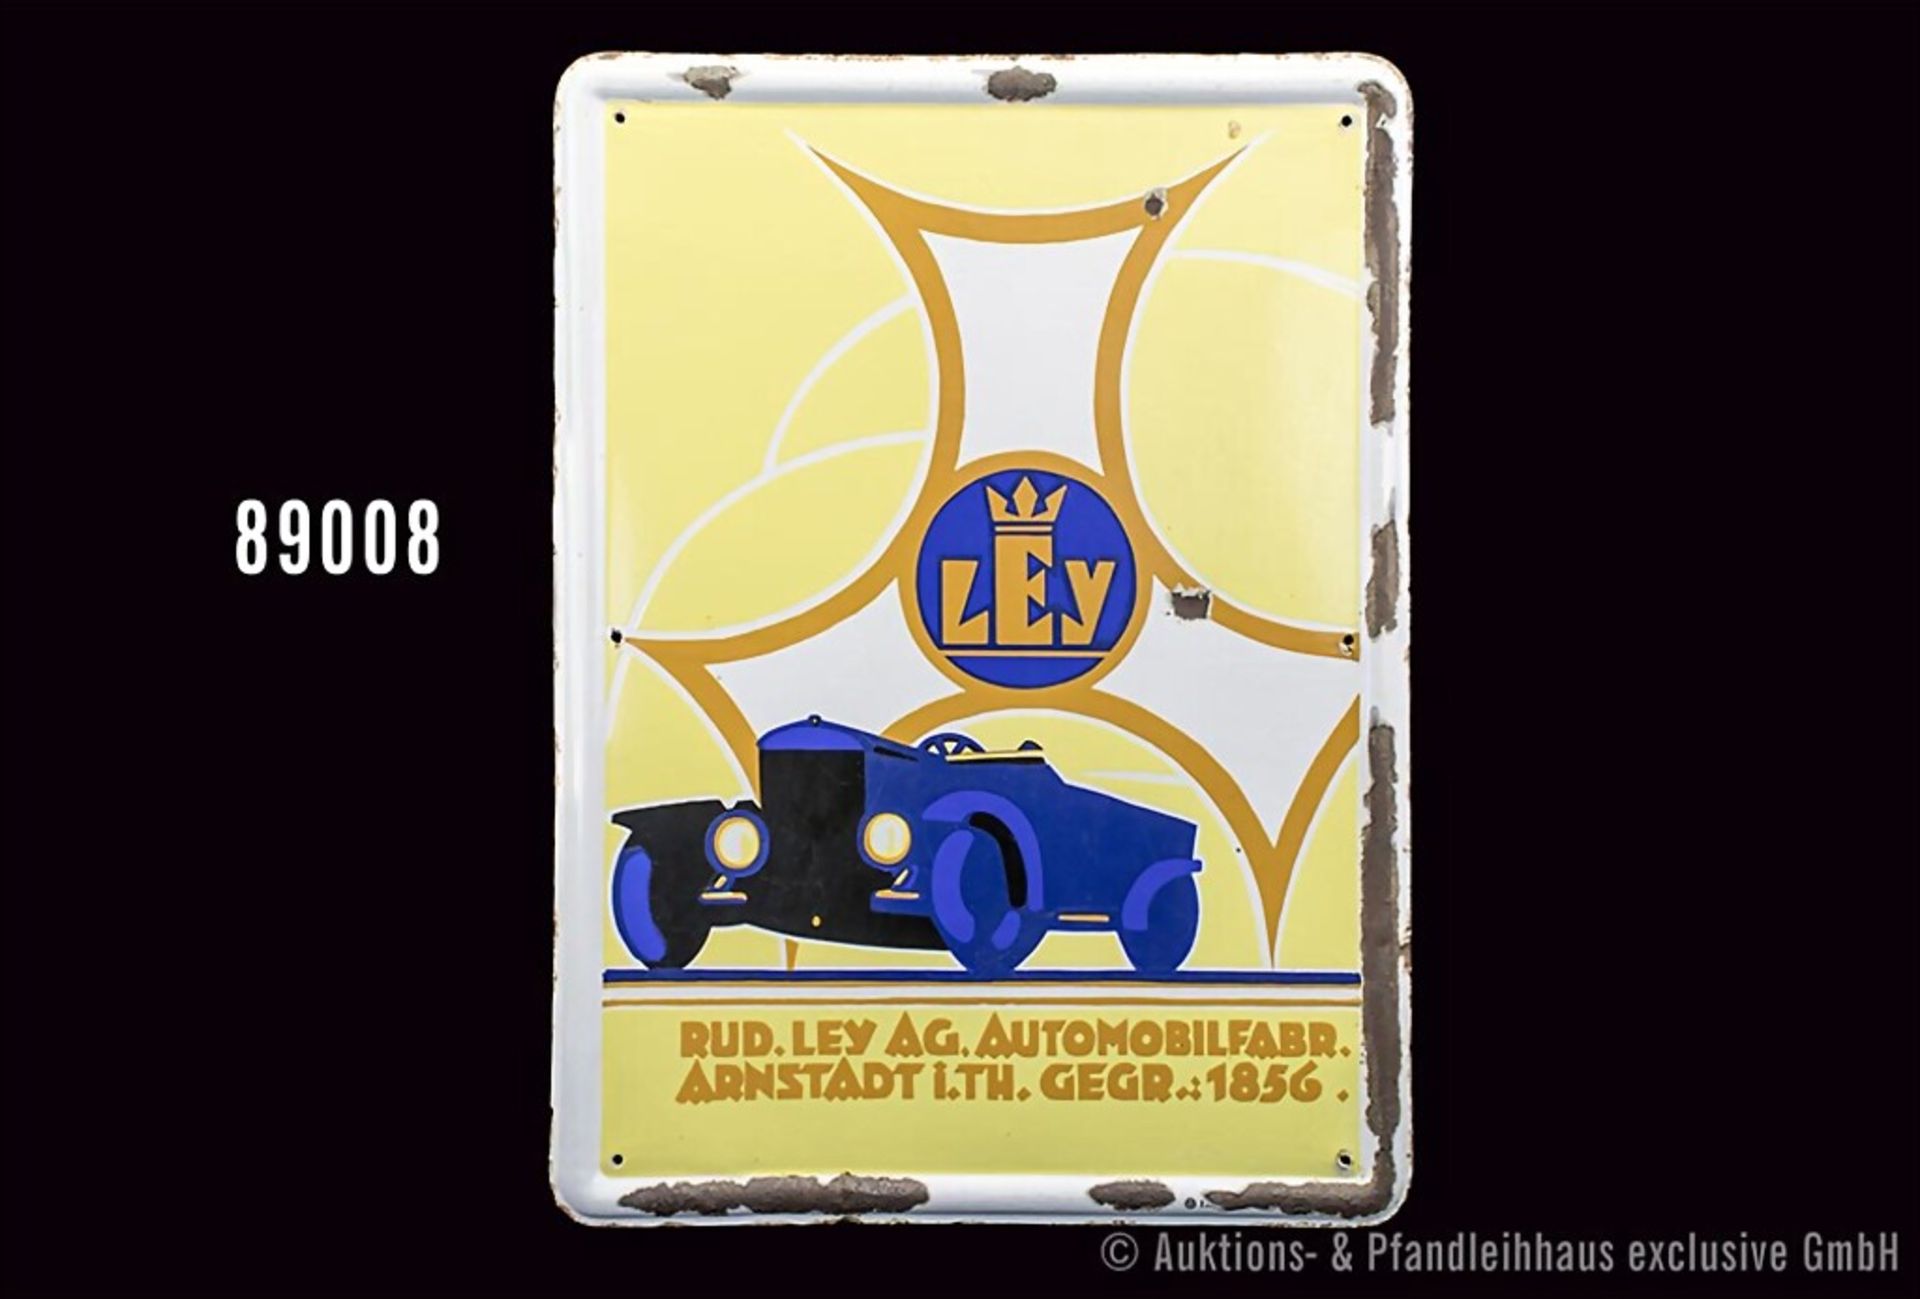 Emailleschild "Automobilfabrik Ley", hochrechteckiges, leicht gewölbtes Werbeschild, an ... - Image 2 of 2